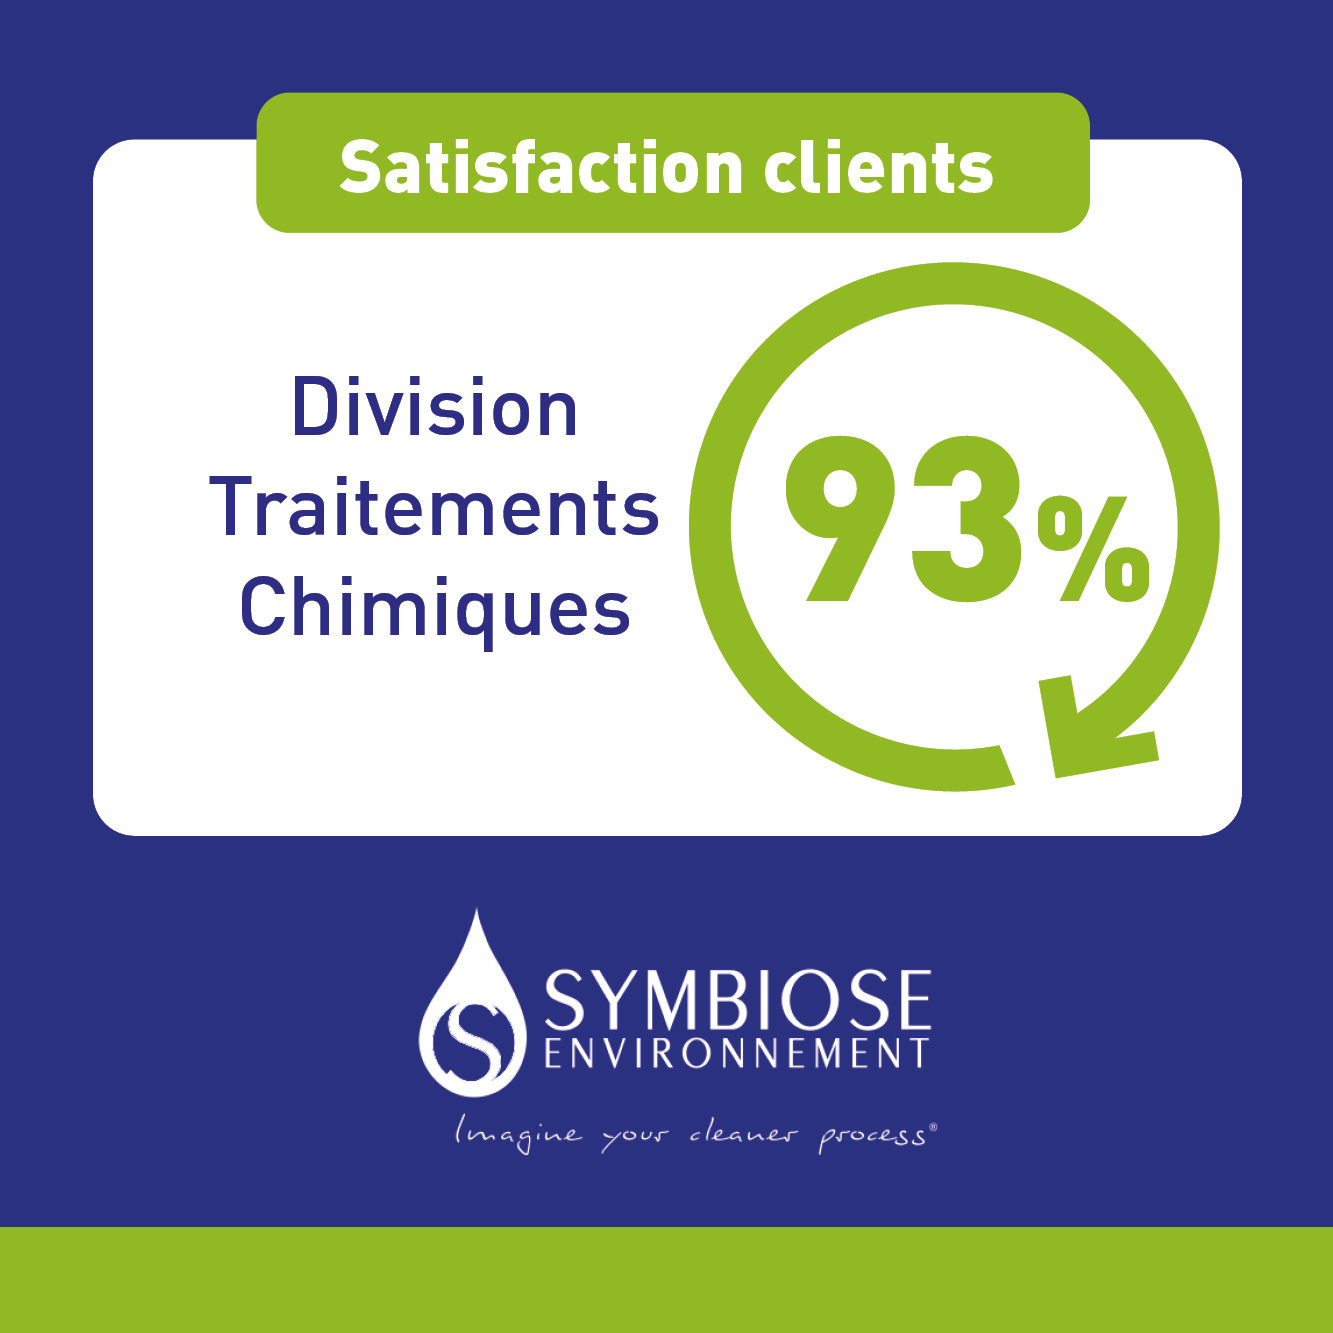 Un taux de satisfaction clients excellent pour notre service traitements chimiques !